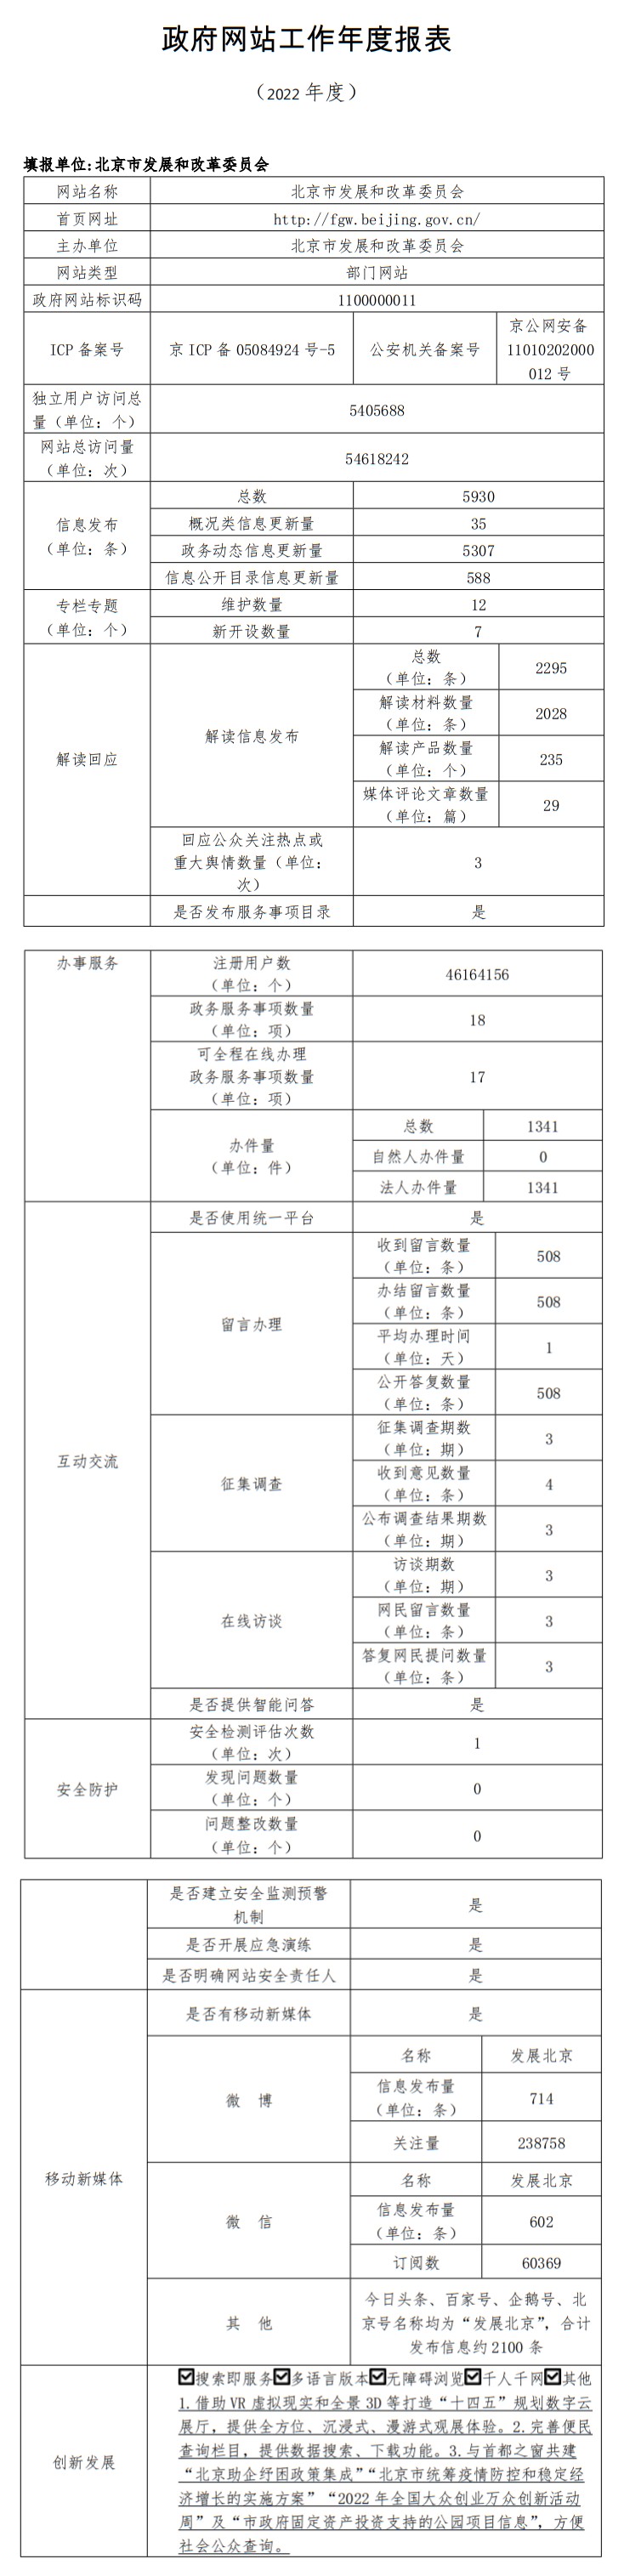 北京市发展和改革委员会2022年政府网站年度工作报表